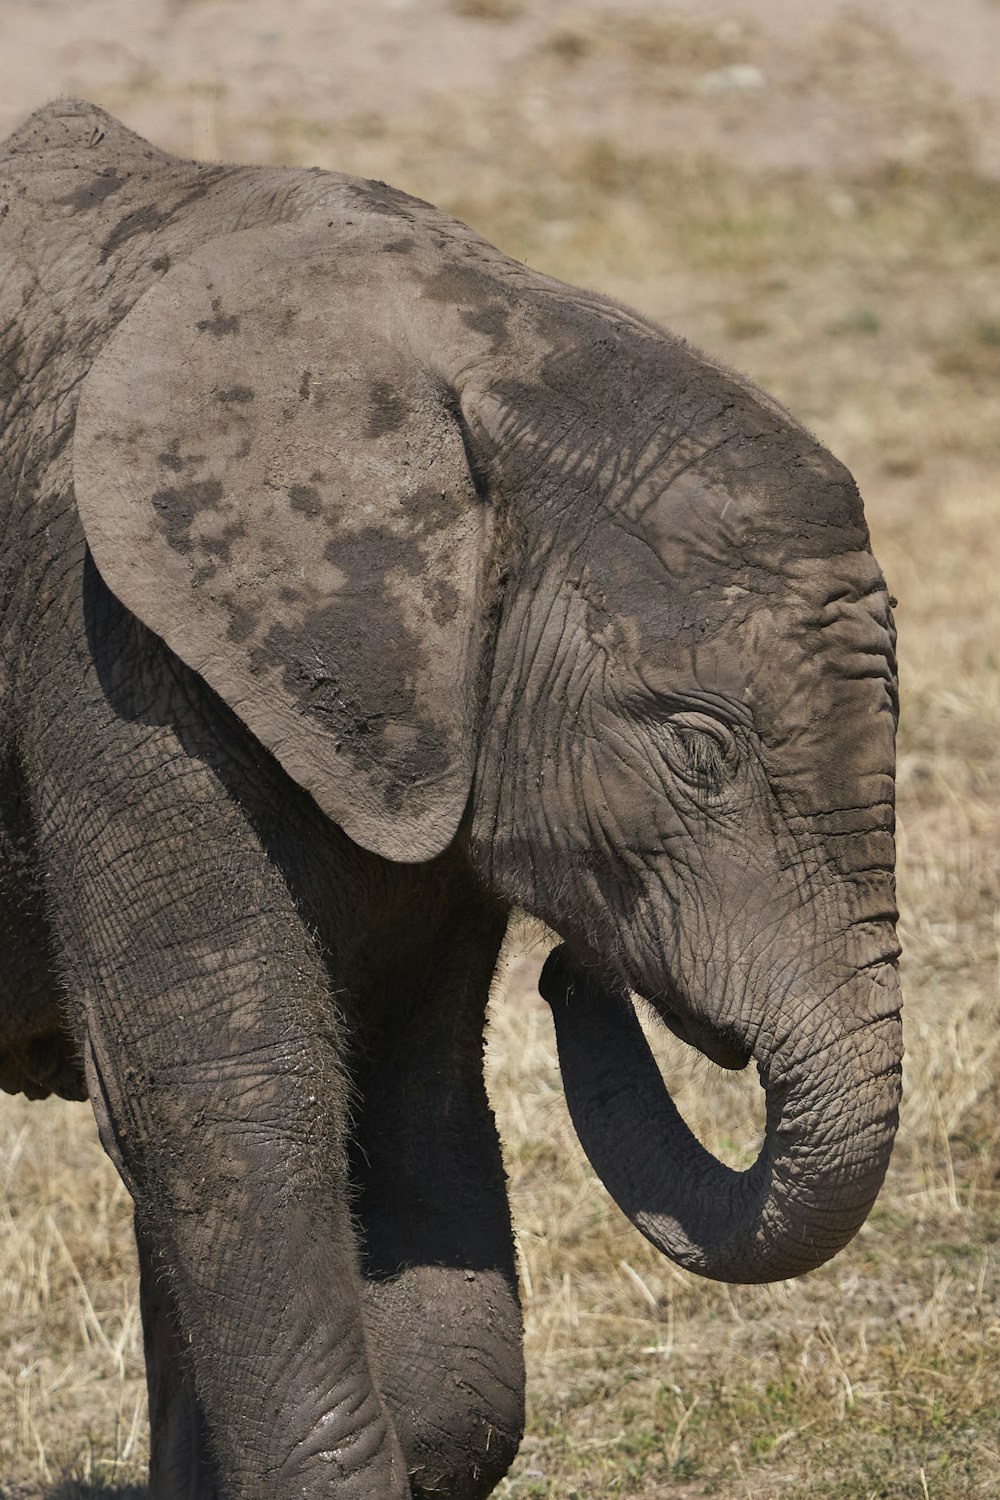 a baby elephant walking across a dry grass field